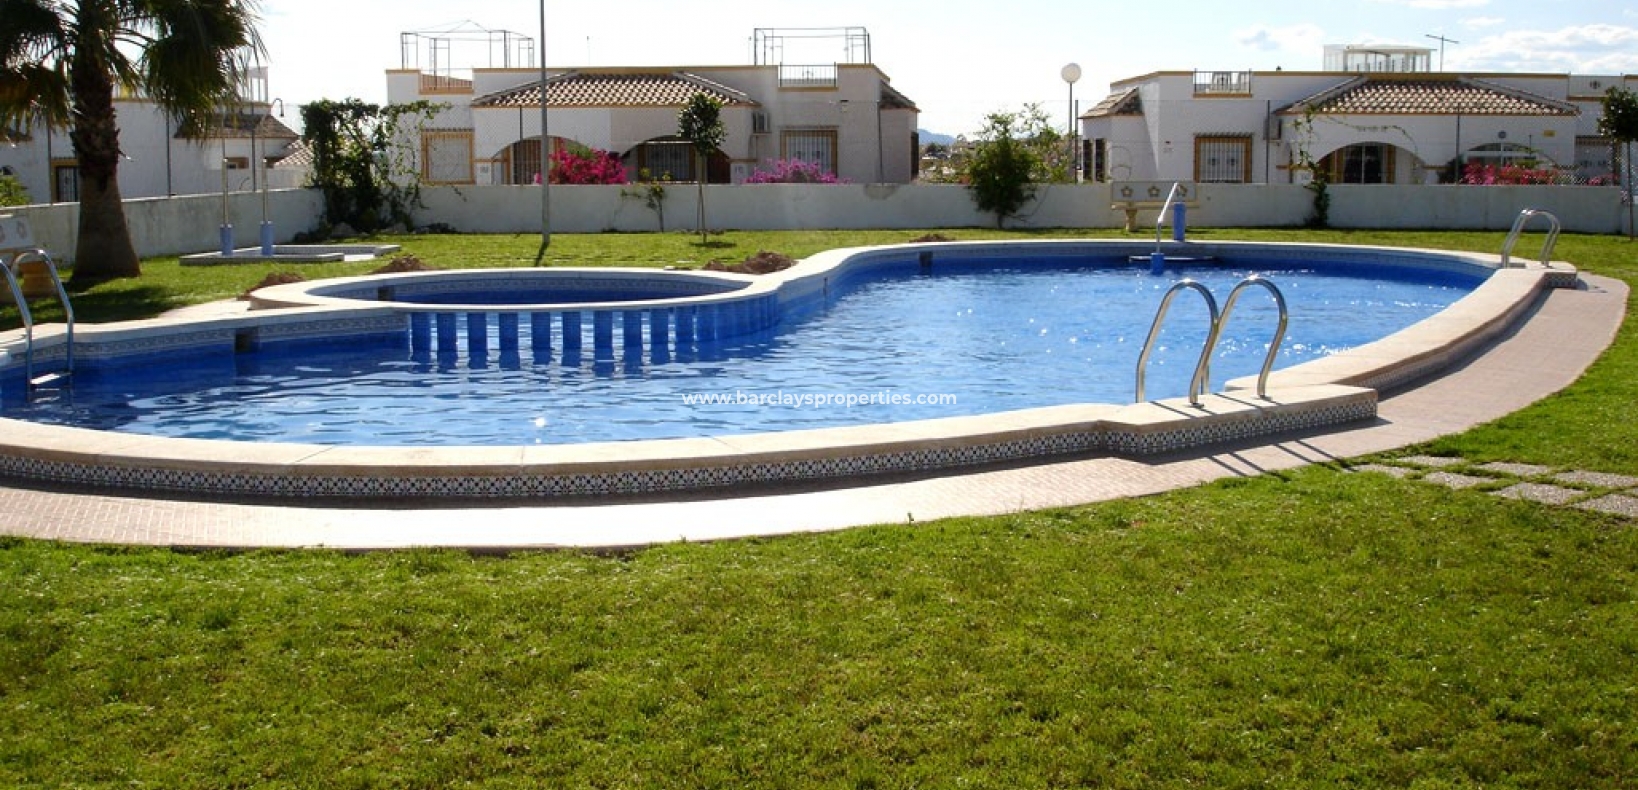 Gemeenschappelijk zwembad - Villa te koop in La Marina met gemeenschappelijk zwembad